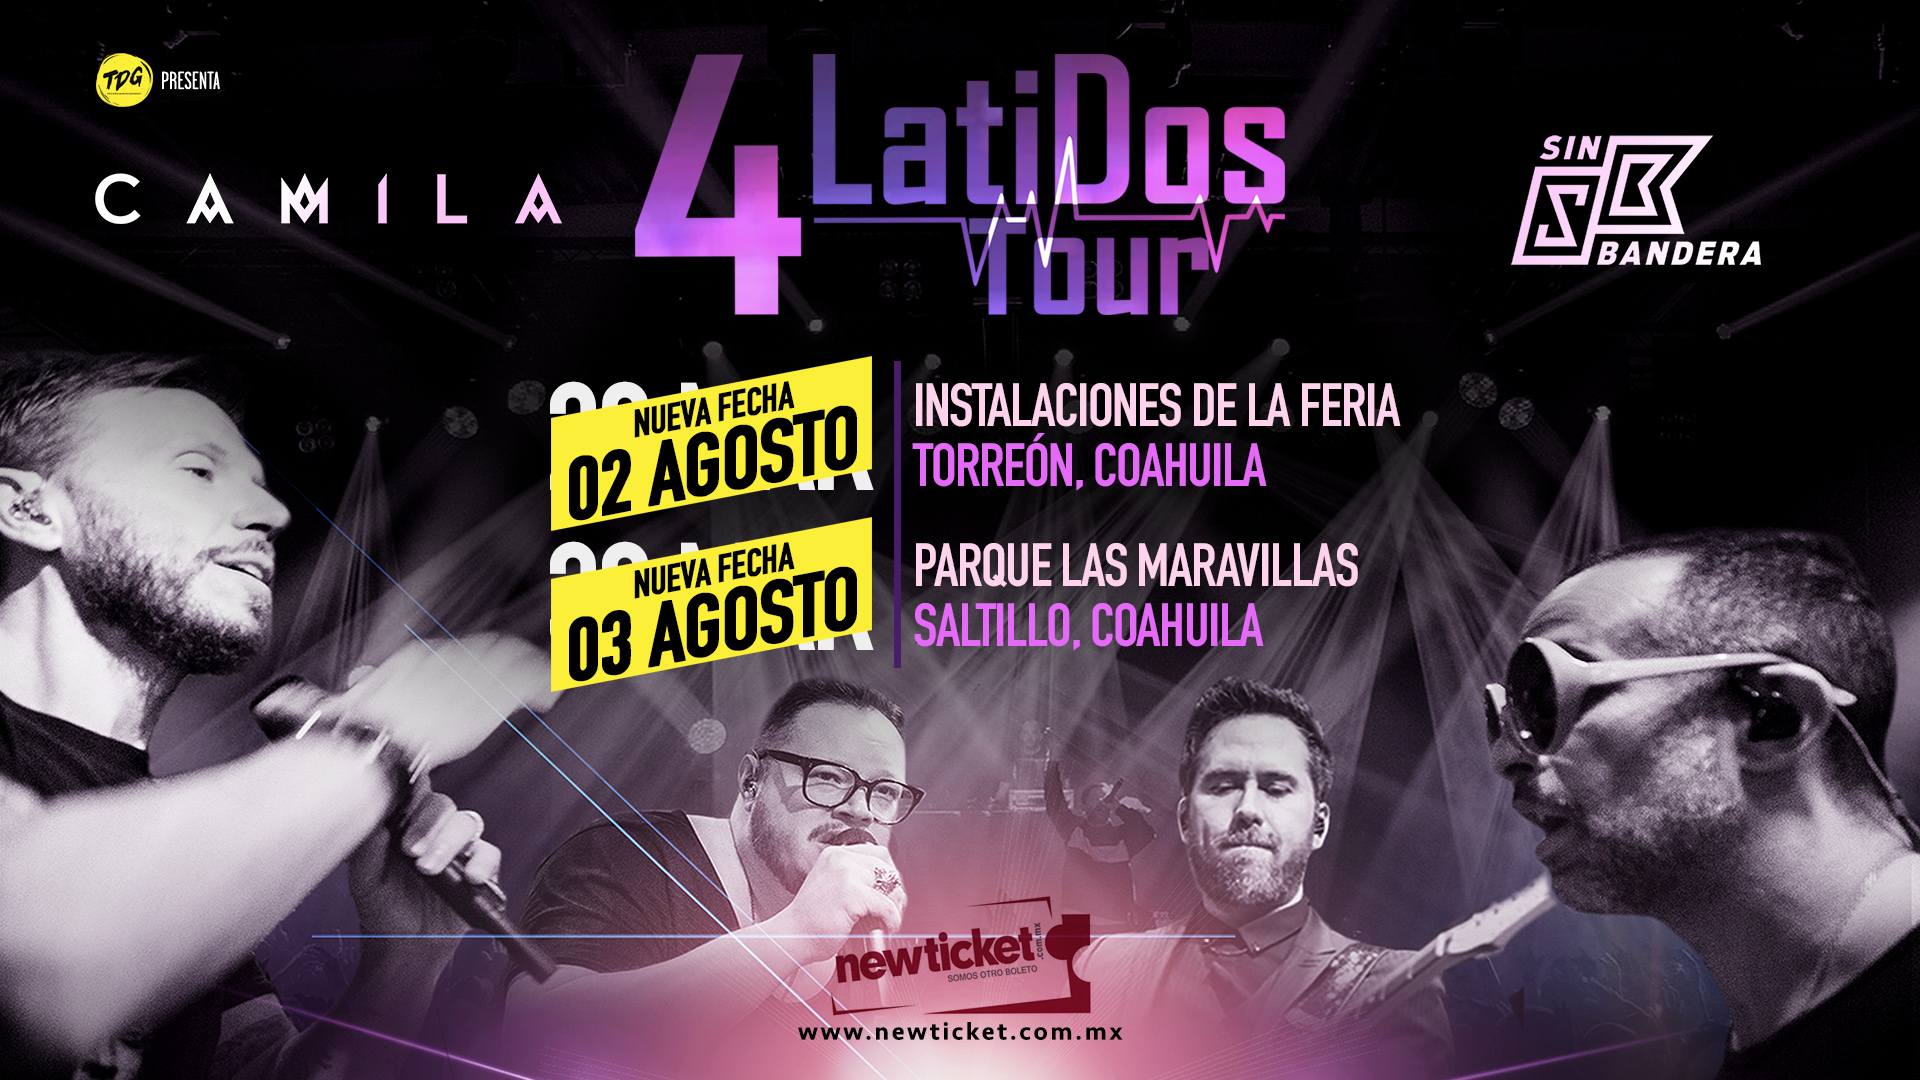 4 Latidos Tour tiene nuevas fechas para Torreón y Saltillo